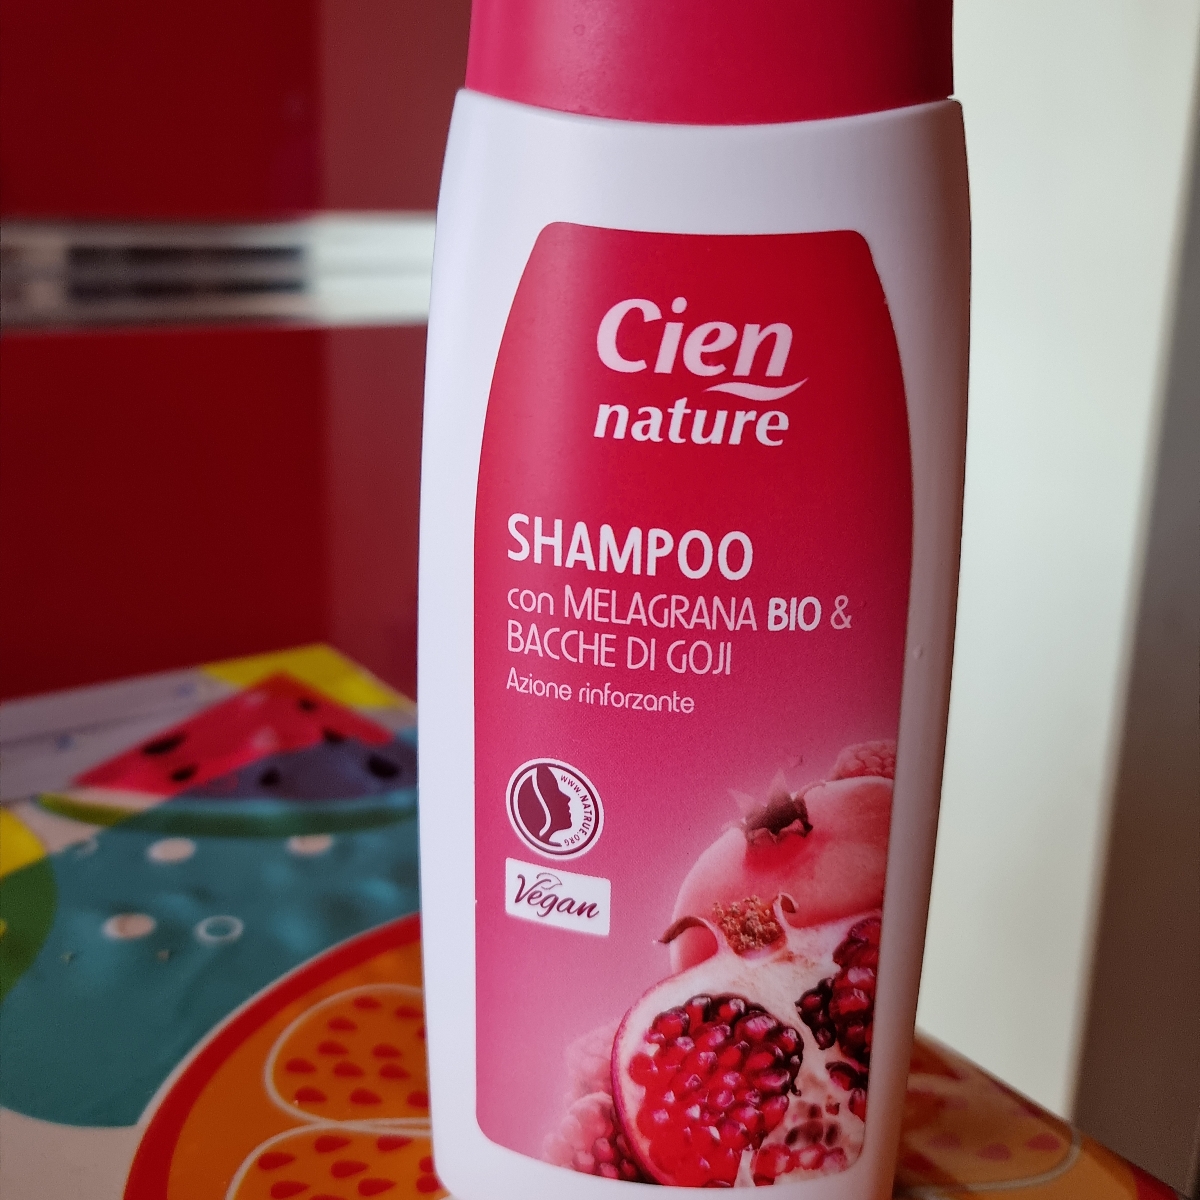 Avis sur Shampoo con melagrana e bacche di goji par Cien nature | abillion